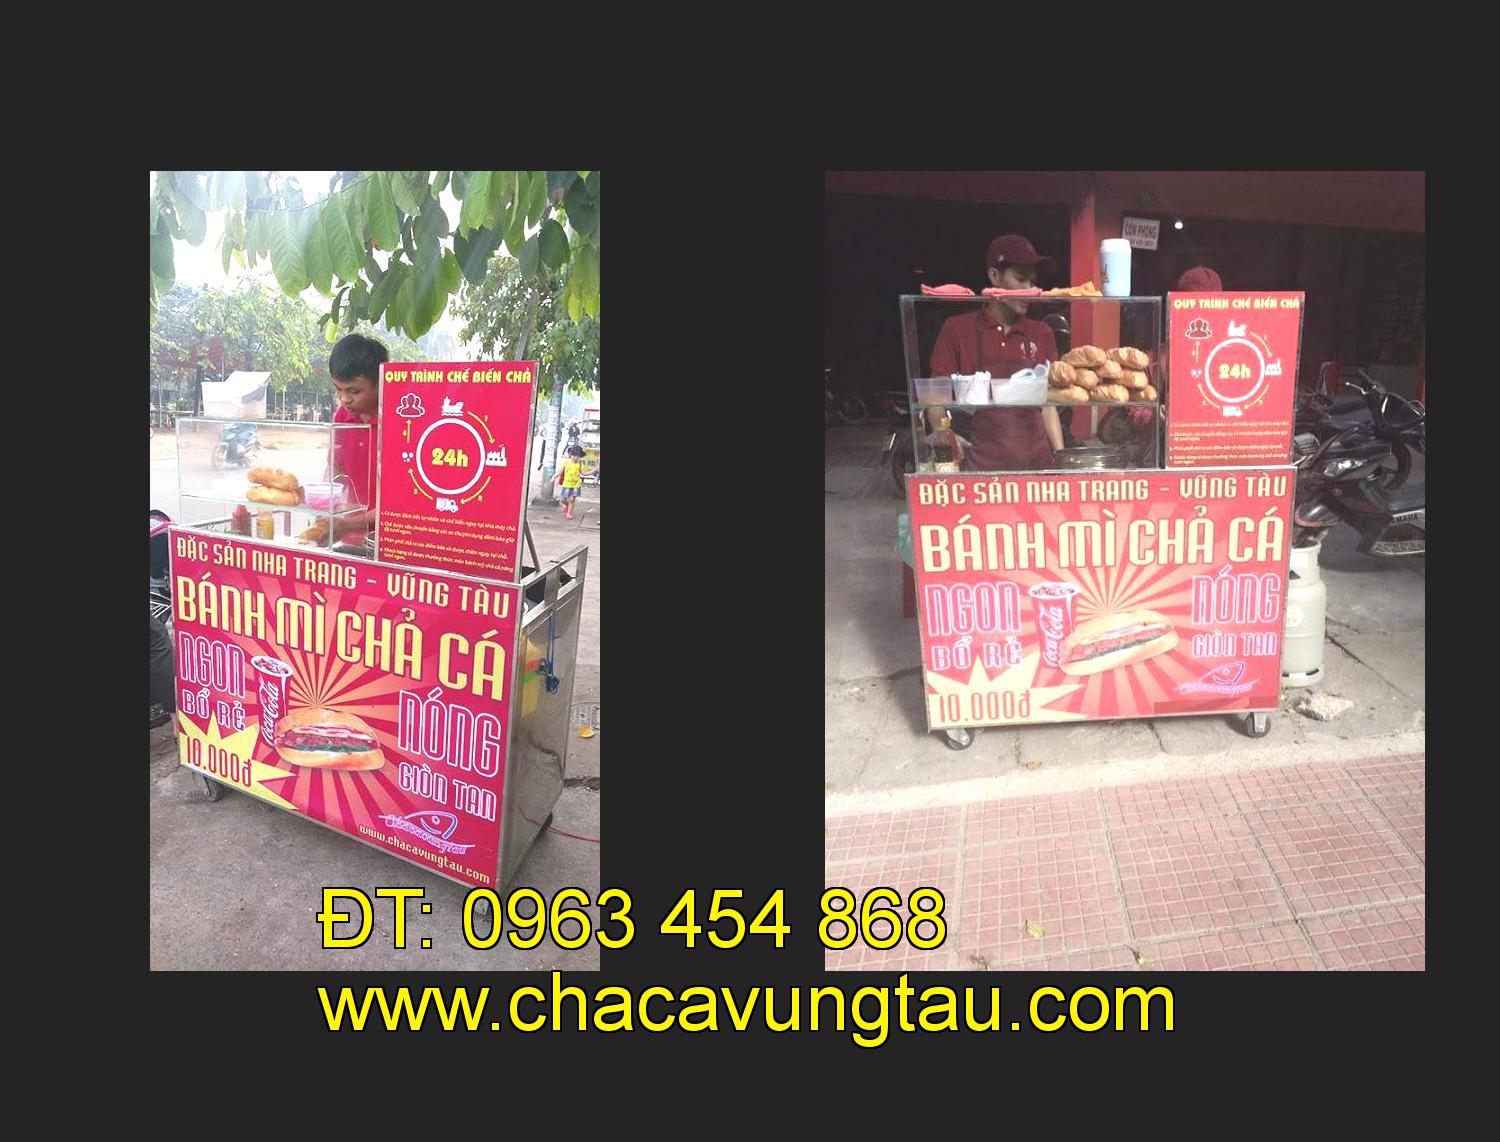 Bán xe bánh mì chả cá tại tỉnh Cần Thơ